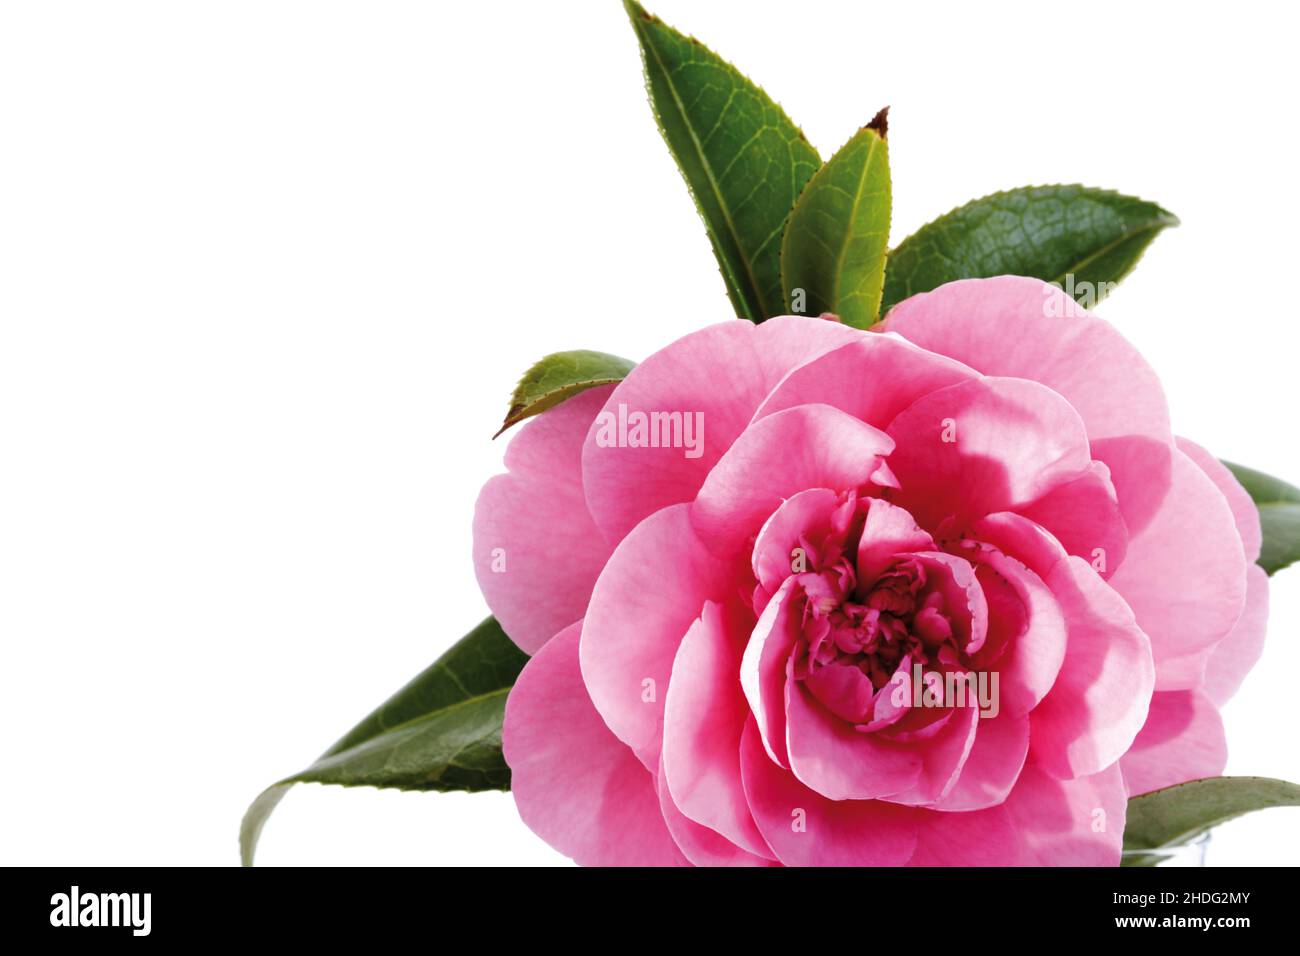 camellias bloom, camellia, camellias blooms, camellias Stock Photo